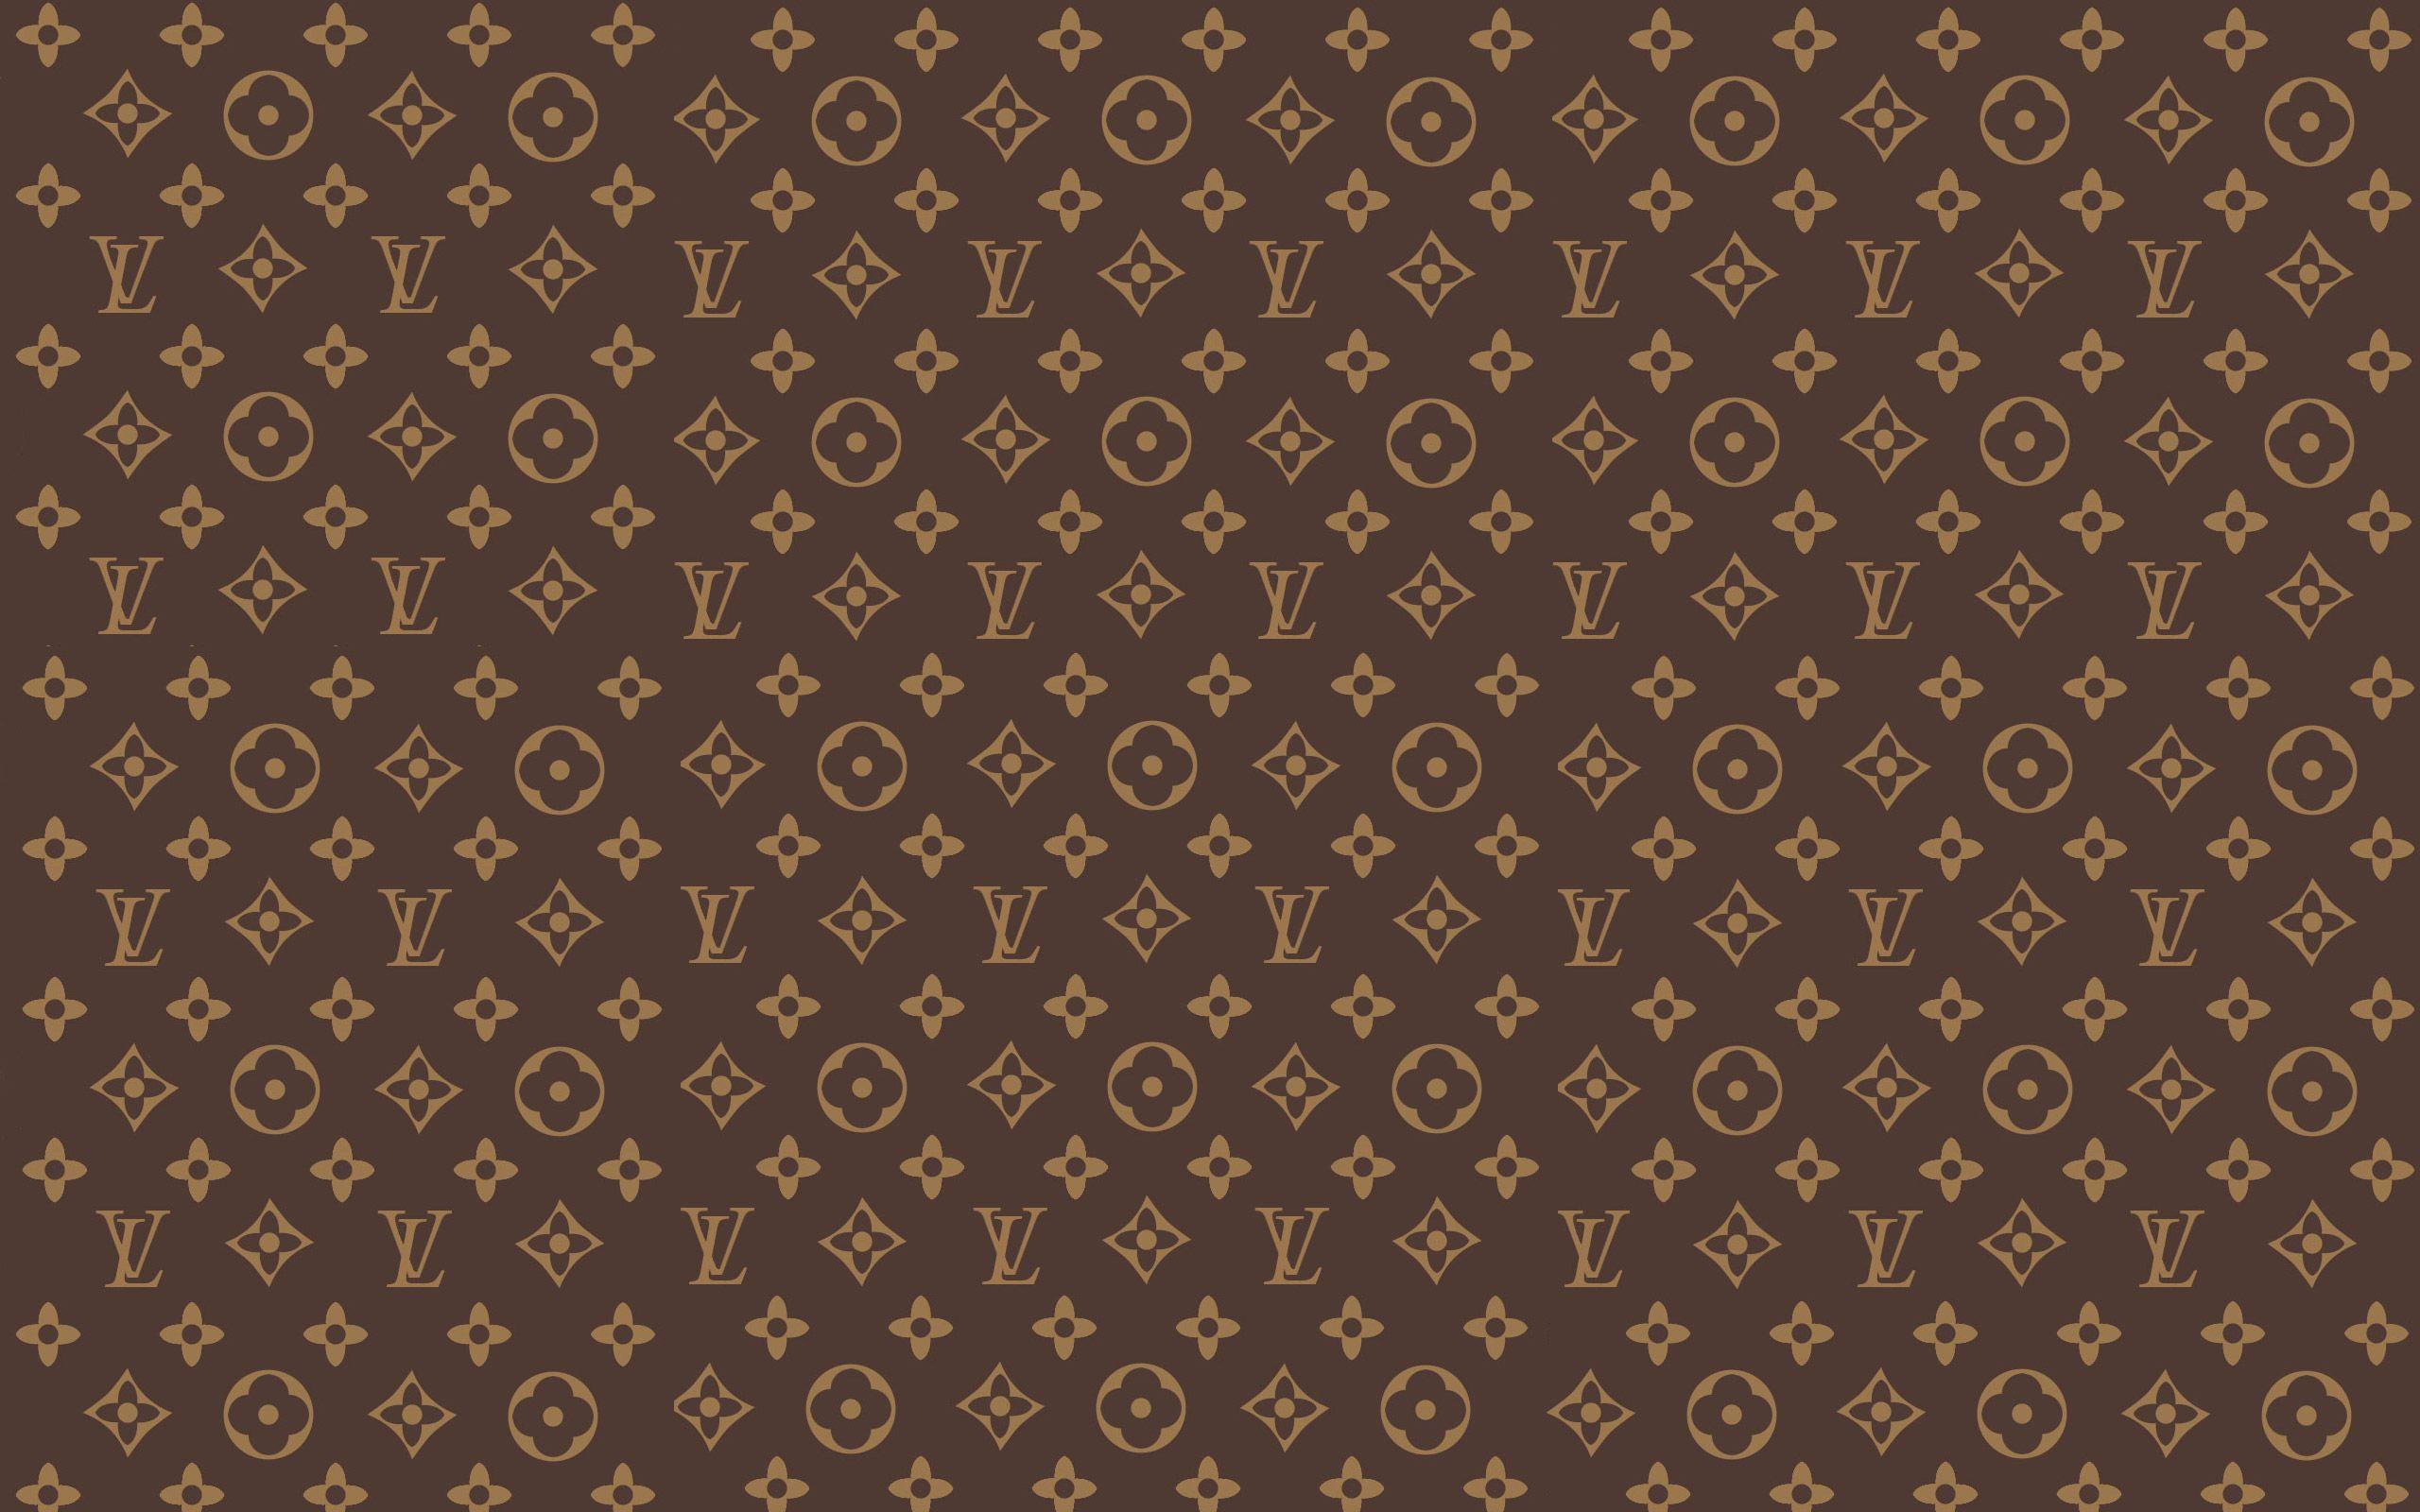 Louis Vuitton Wallpapers High Resolution - PixelsTalk.Net